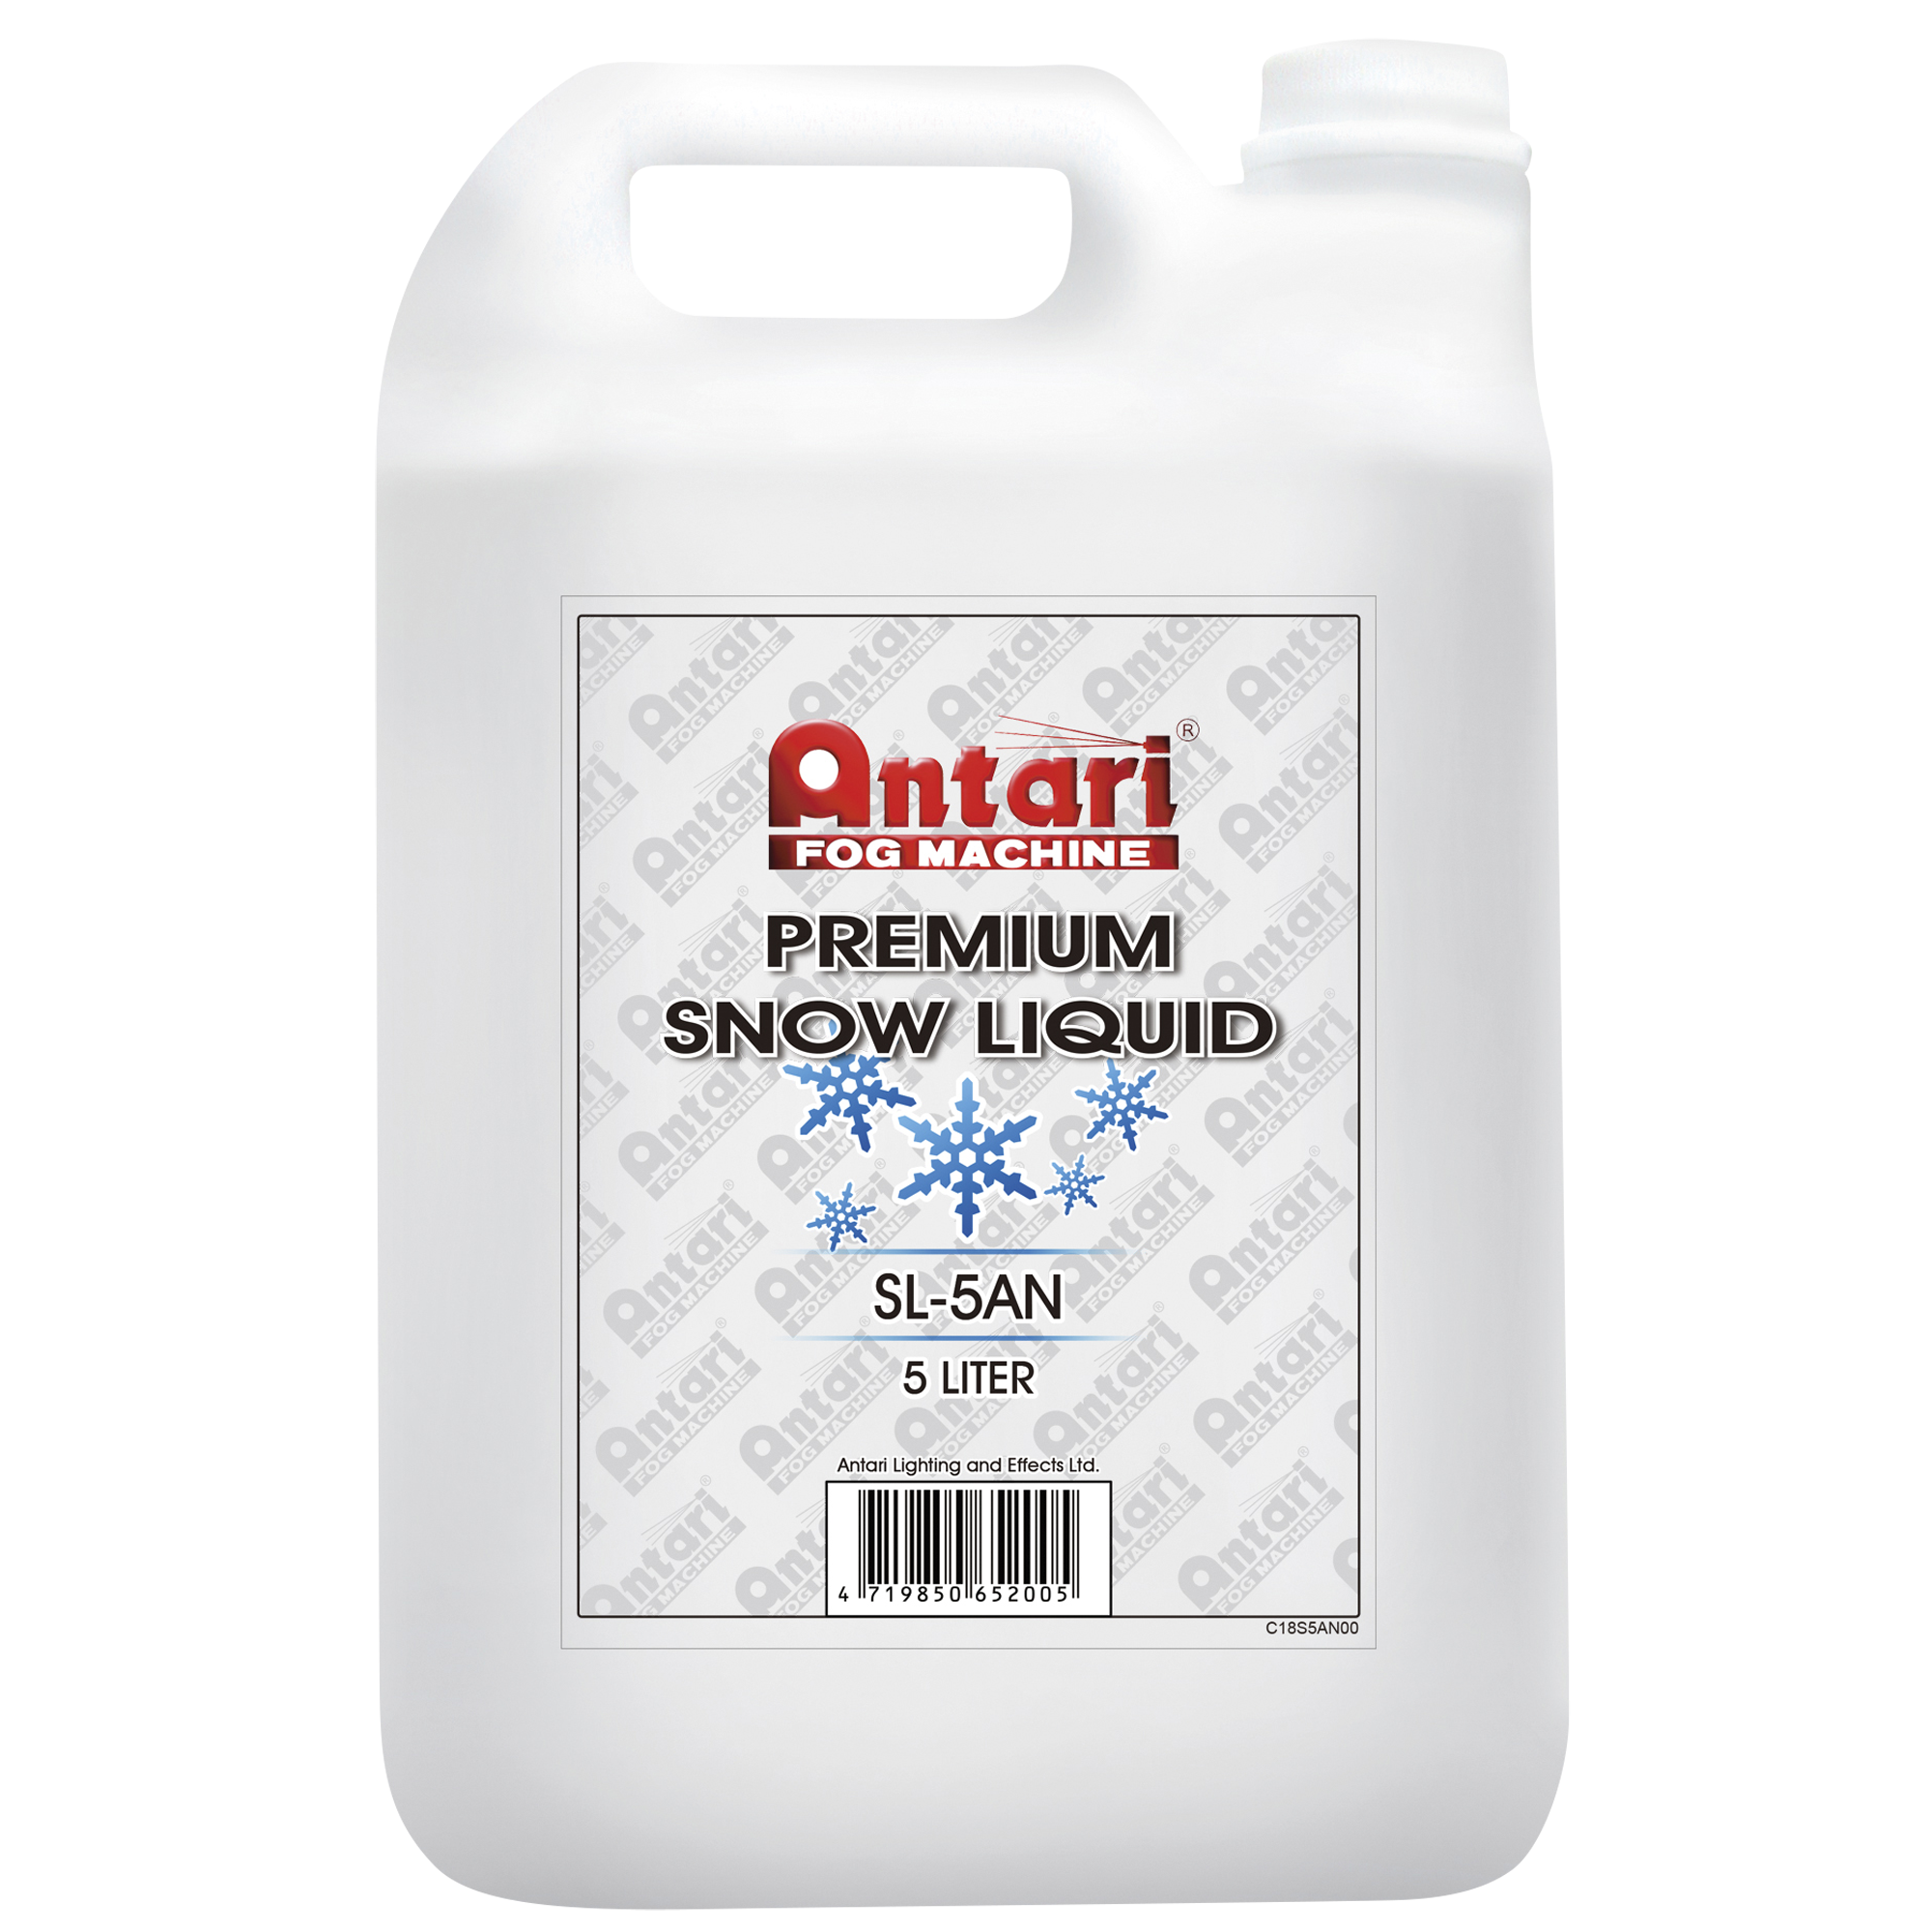 Antari Snow Liquid SL-5AN 5 Liter - Premium fein